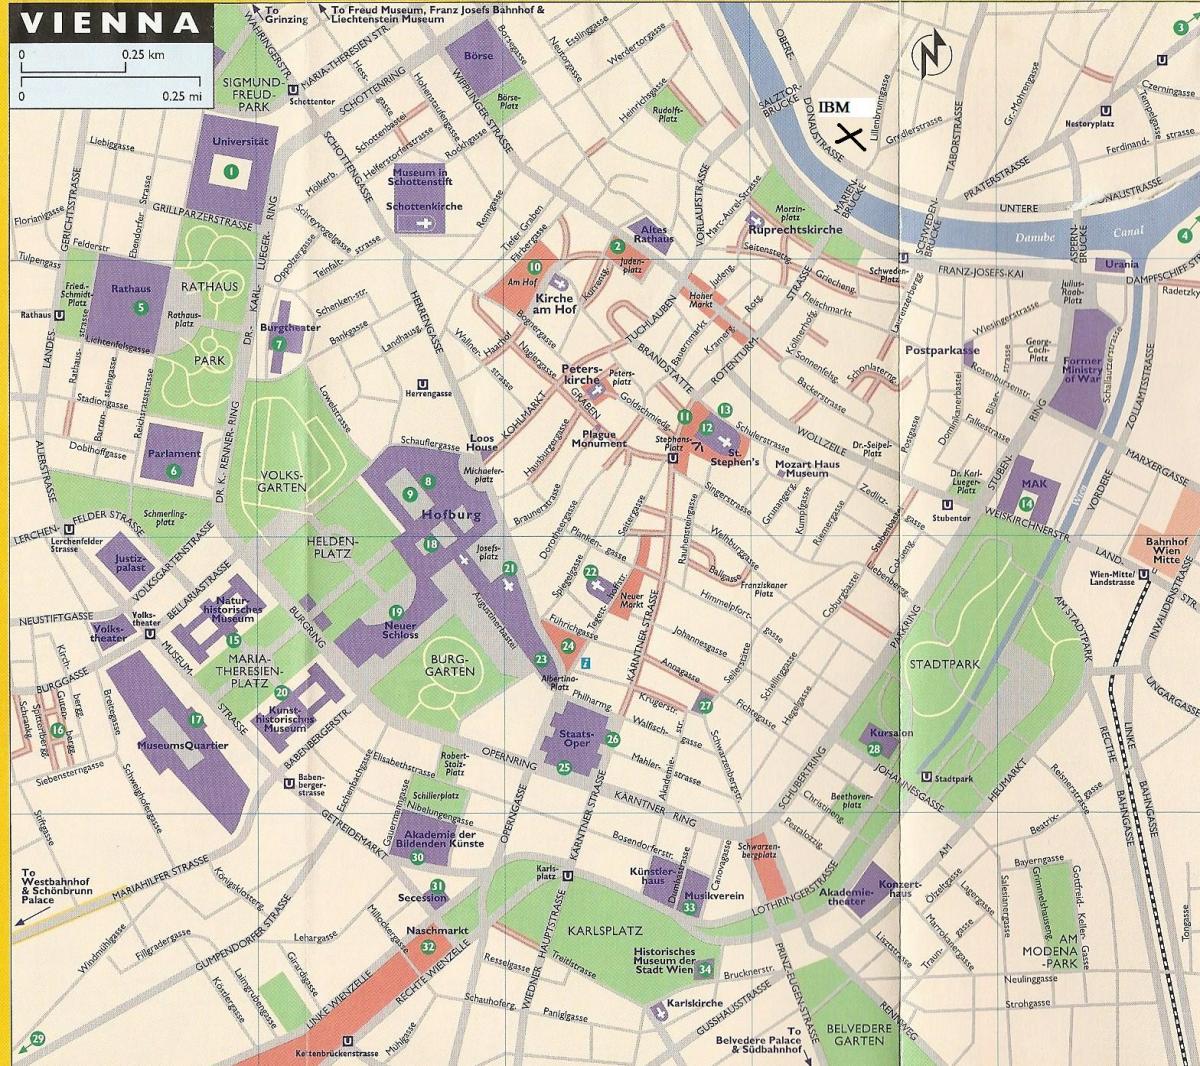 Mapa obchodních domů ve Vídni 